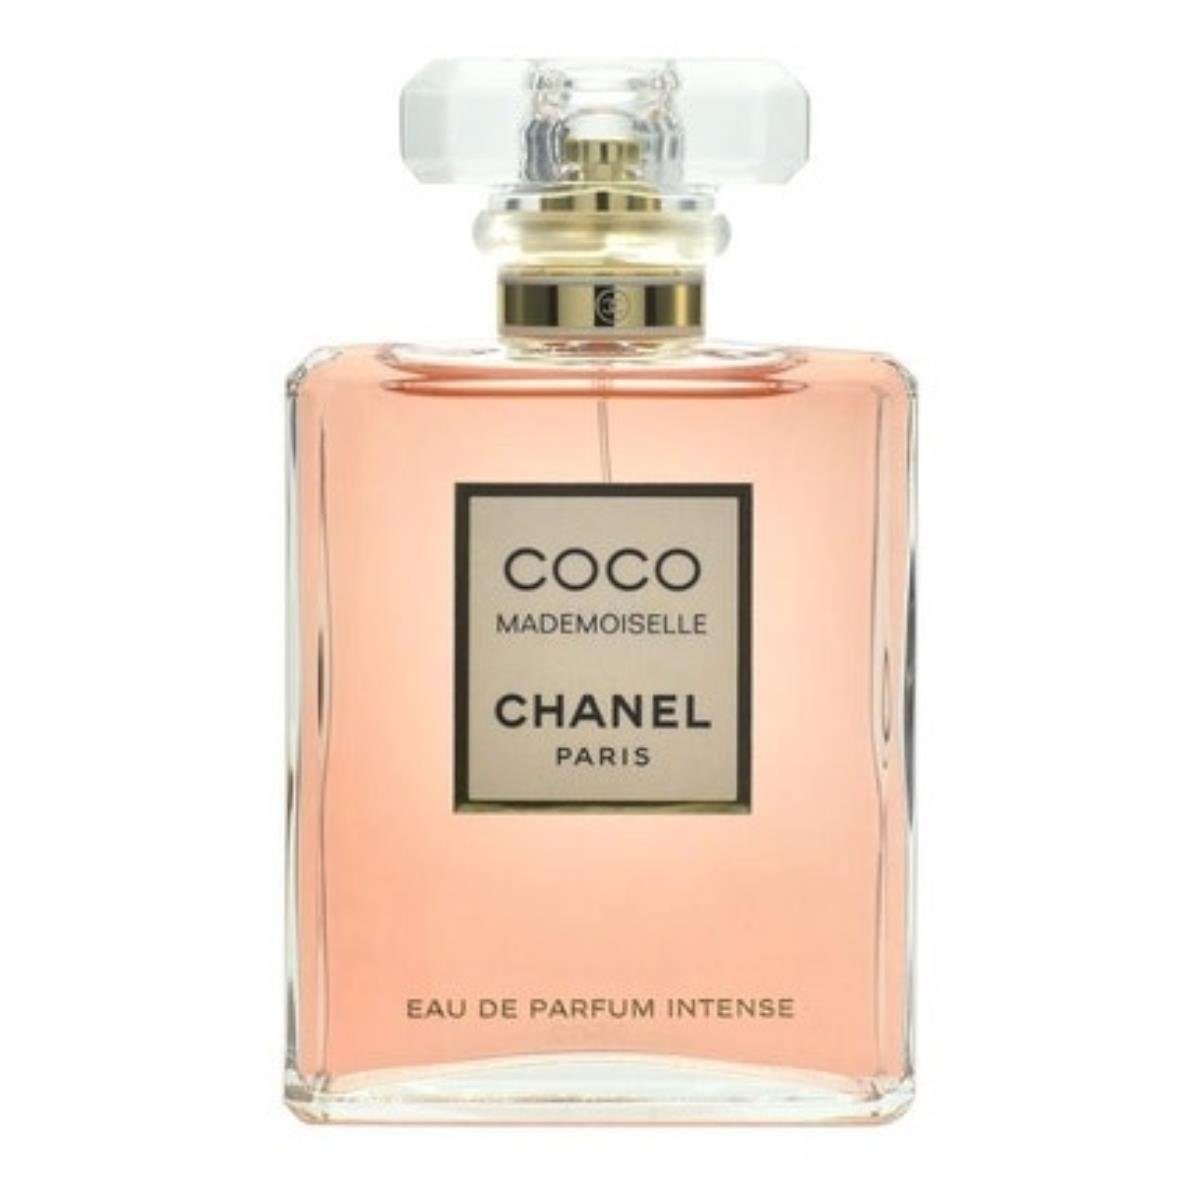 CHANEL Eau de Parfum Chanel Coco Mademoiselle Intense